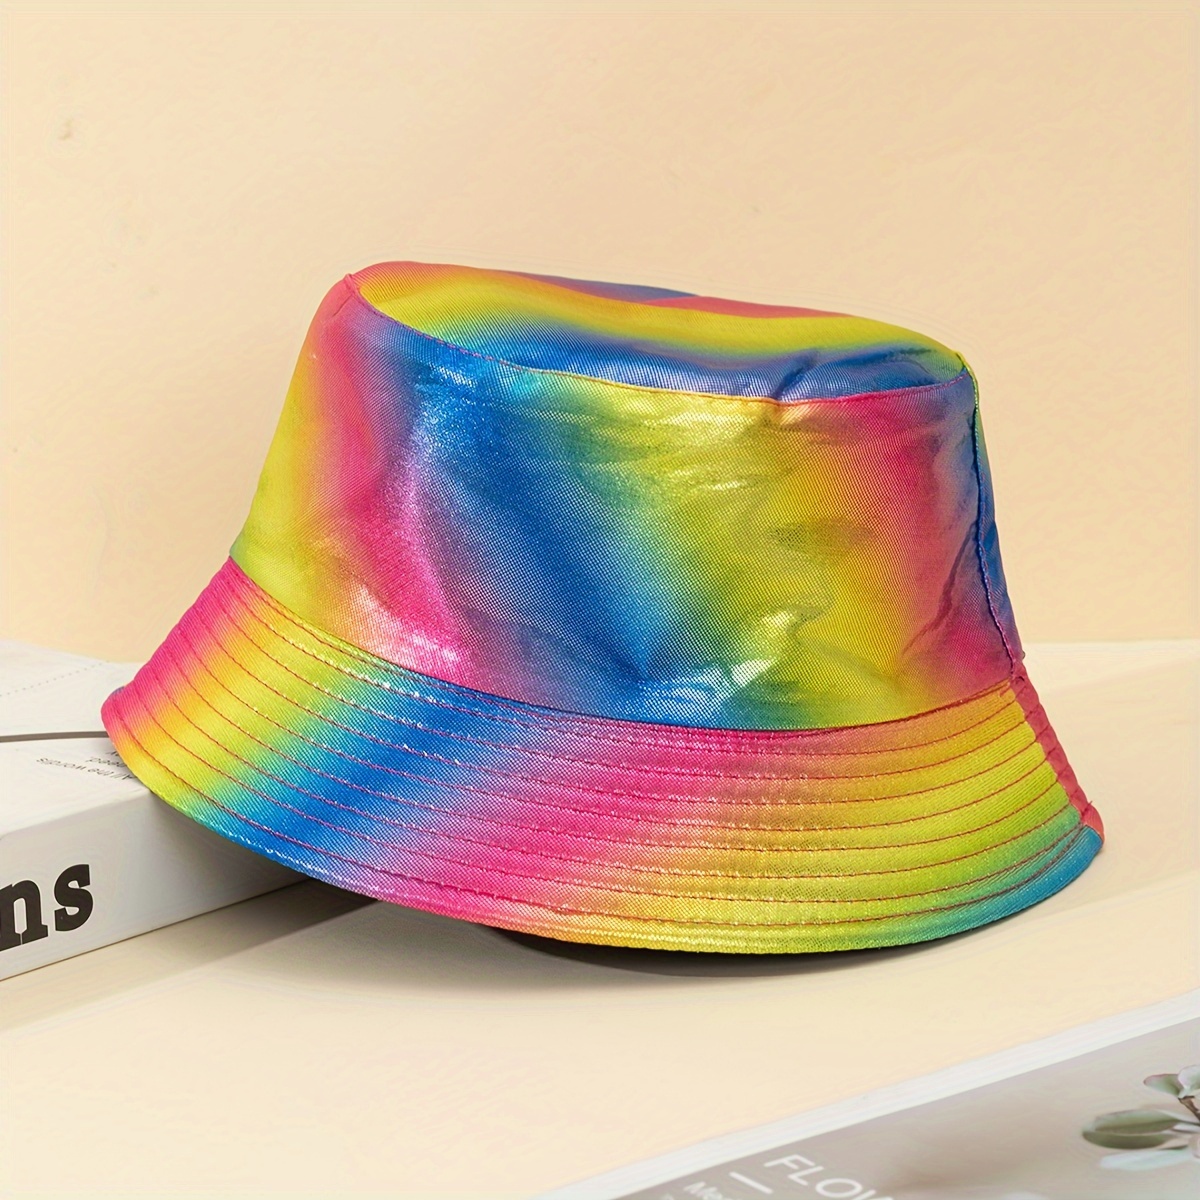 Sombrero Para El Sol Hombre Tie Dye Graffiti Moda Cubo Sombrero Cuenca  Sombrero Simple Sombrero, Compre Ahora Ofertas Por Tiempo Limitado